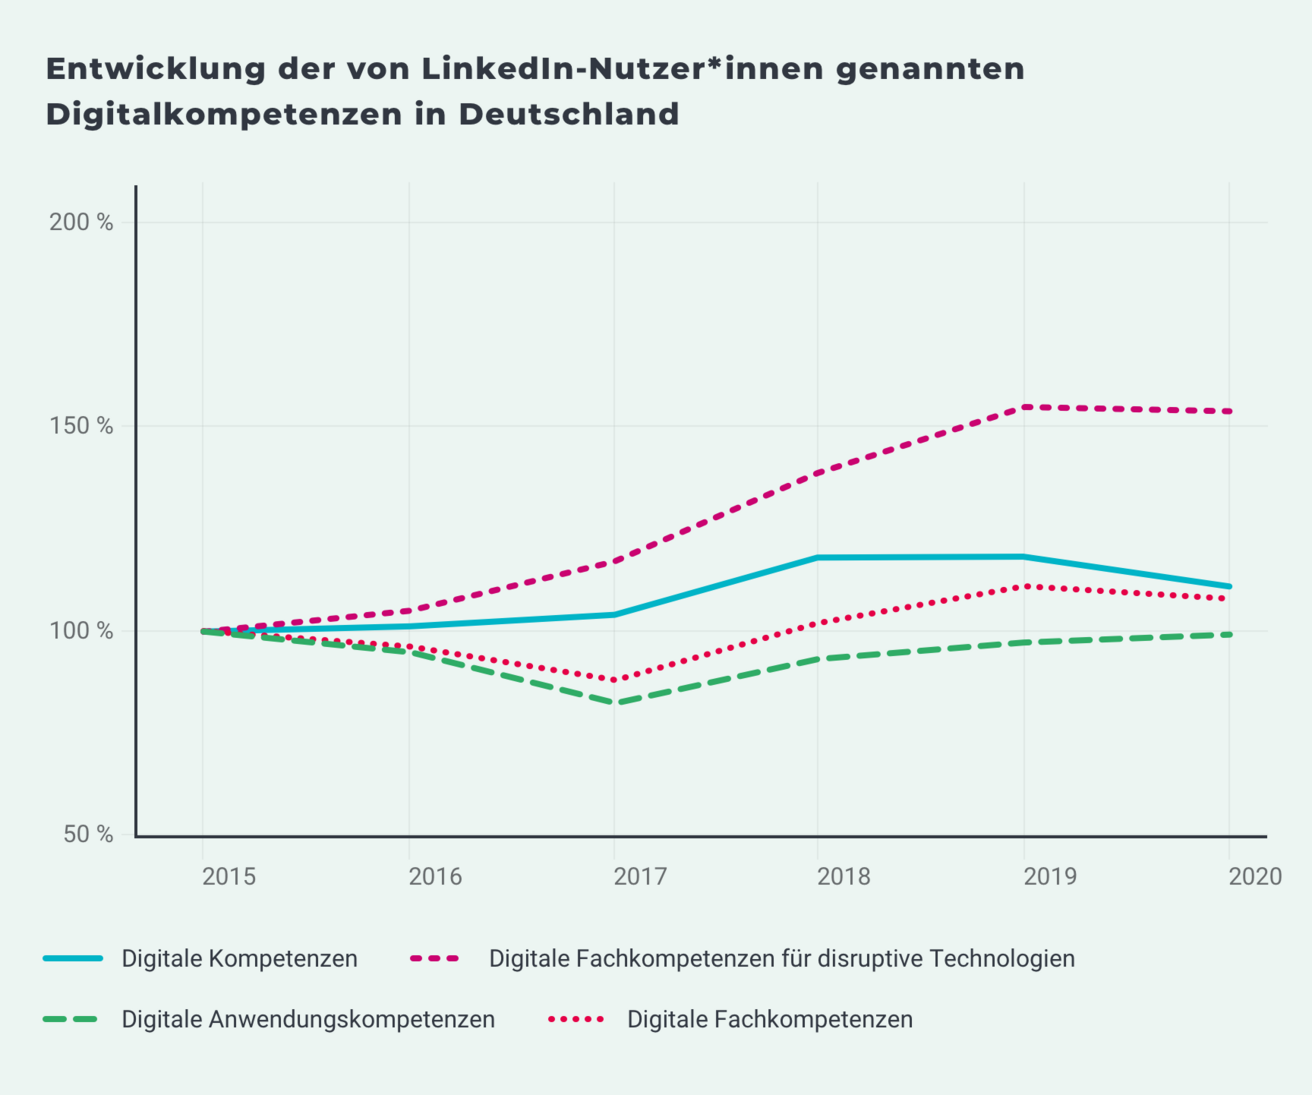 Die Abbildung zeigt die anteilige Entwicklung der digitalen Kompetenzen an allen Kompetenzen in Deutschland als prozentuale Veränderung zum Basisjahr 2015.